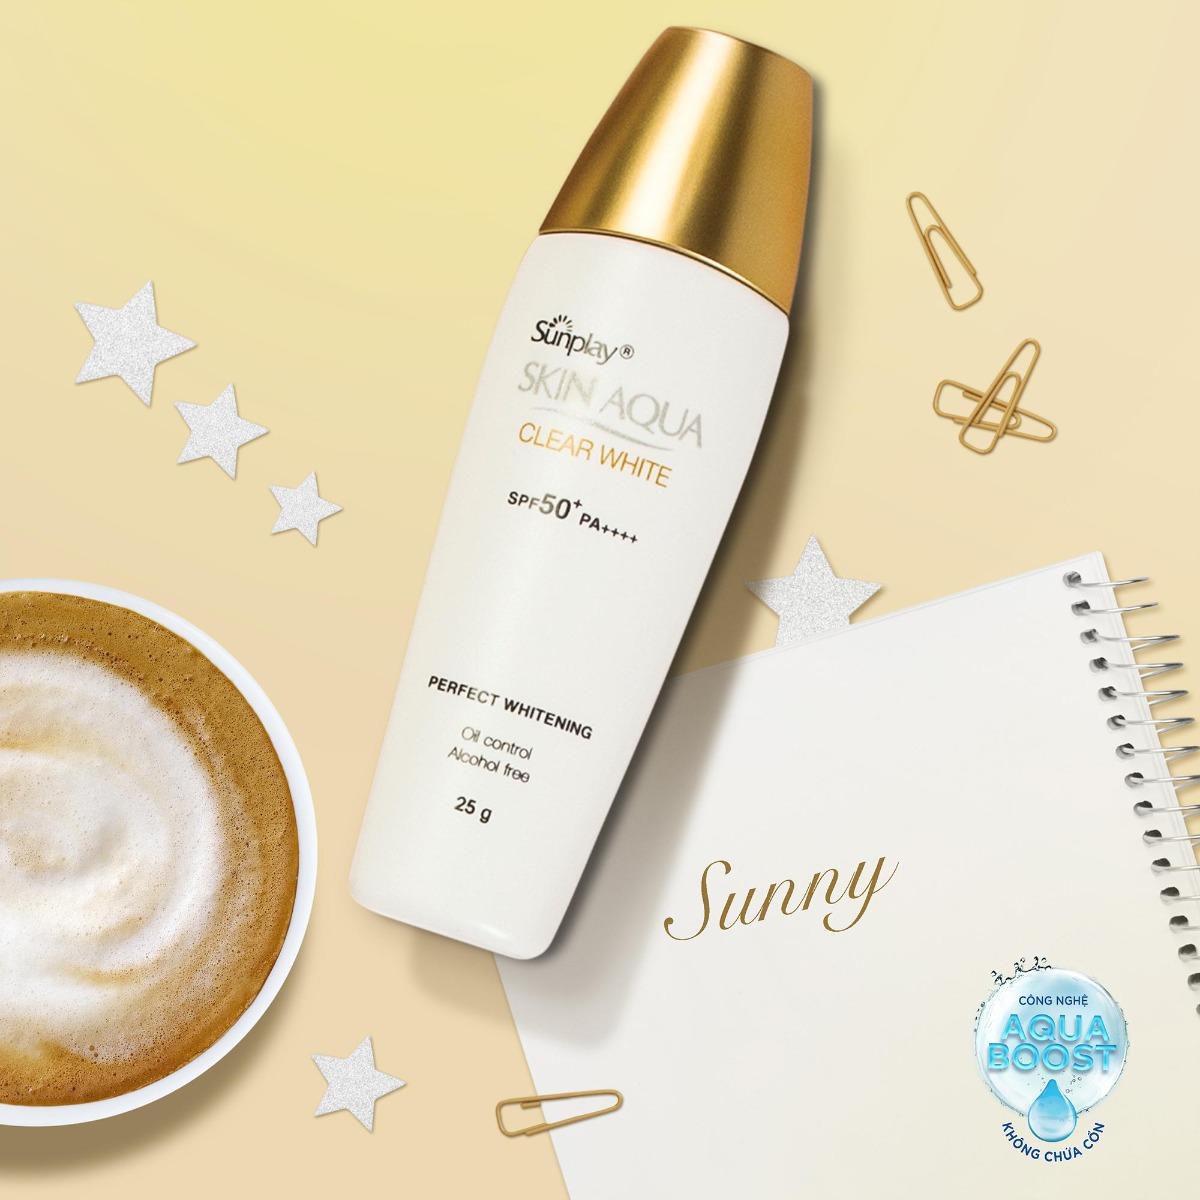 Sunplay Skin Aqua Clear White SPF 50+ PA++++- Kem chống nắng giá học sinh - Đẹp 365